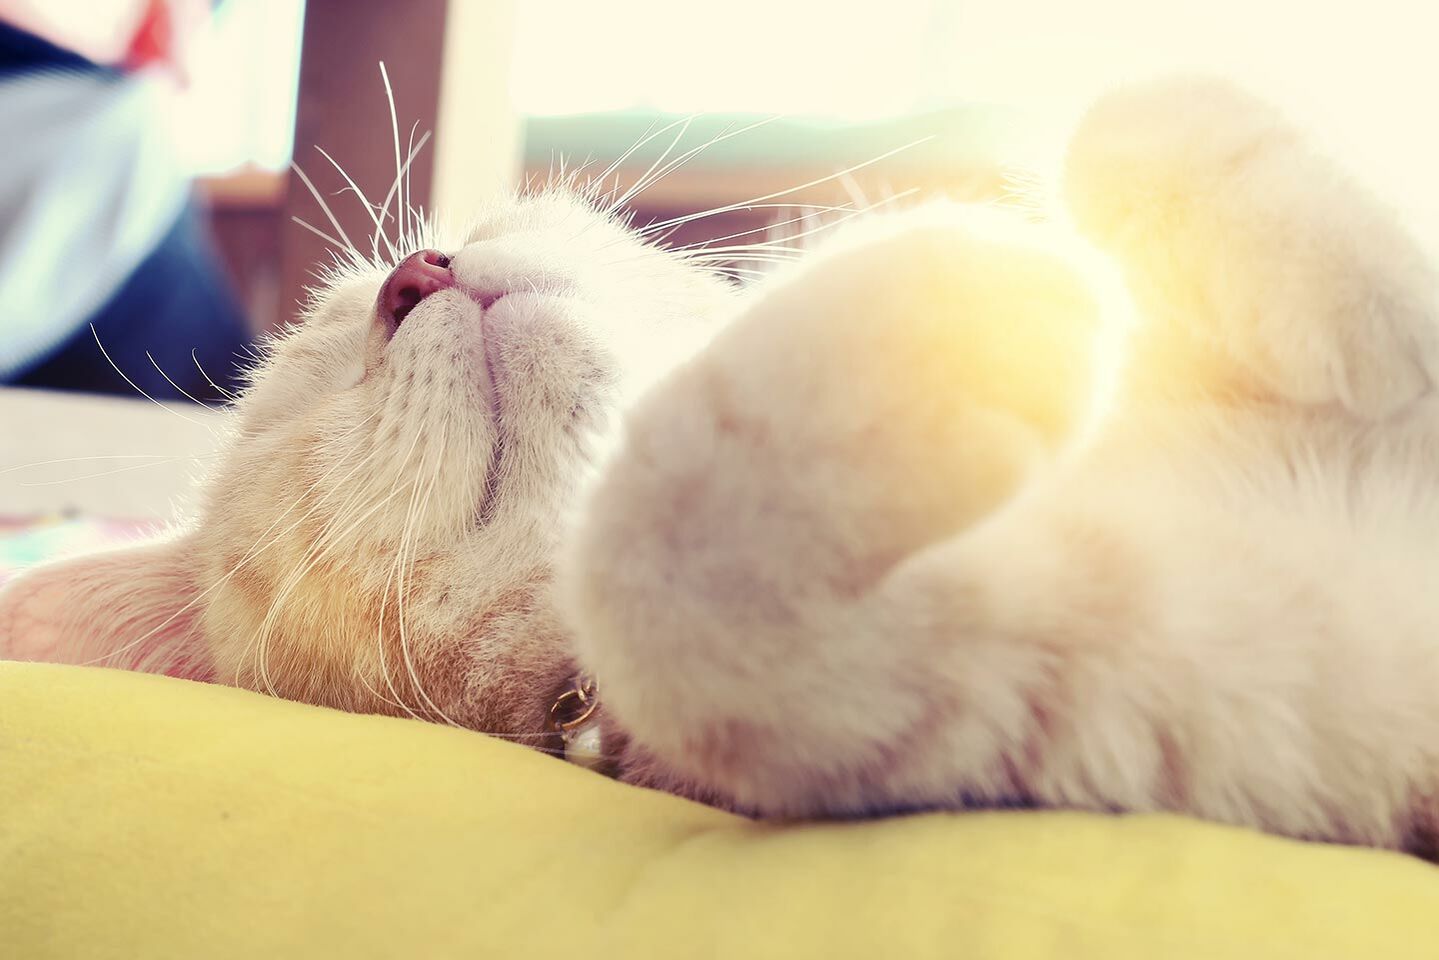 Nahaufnahme einer jungen Katze, die entspannt auf dem Rücken auf einer Decke liegt.